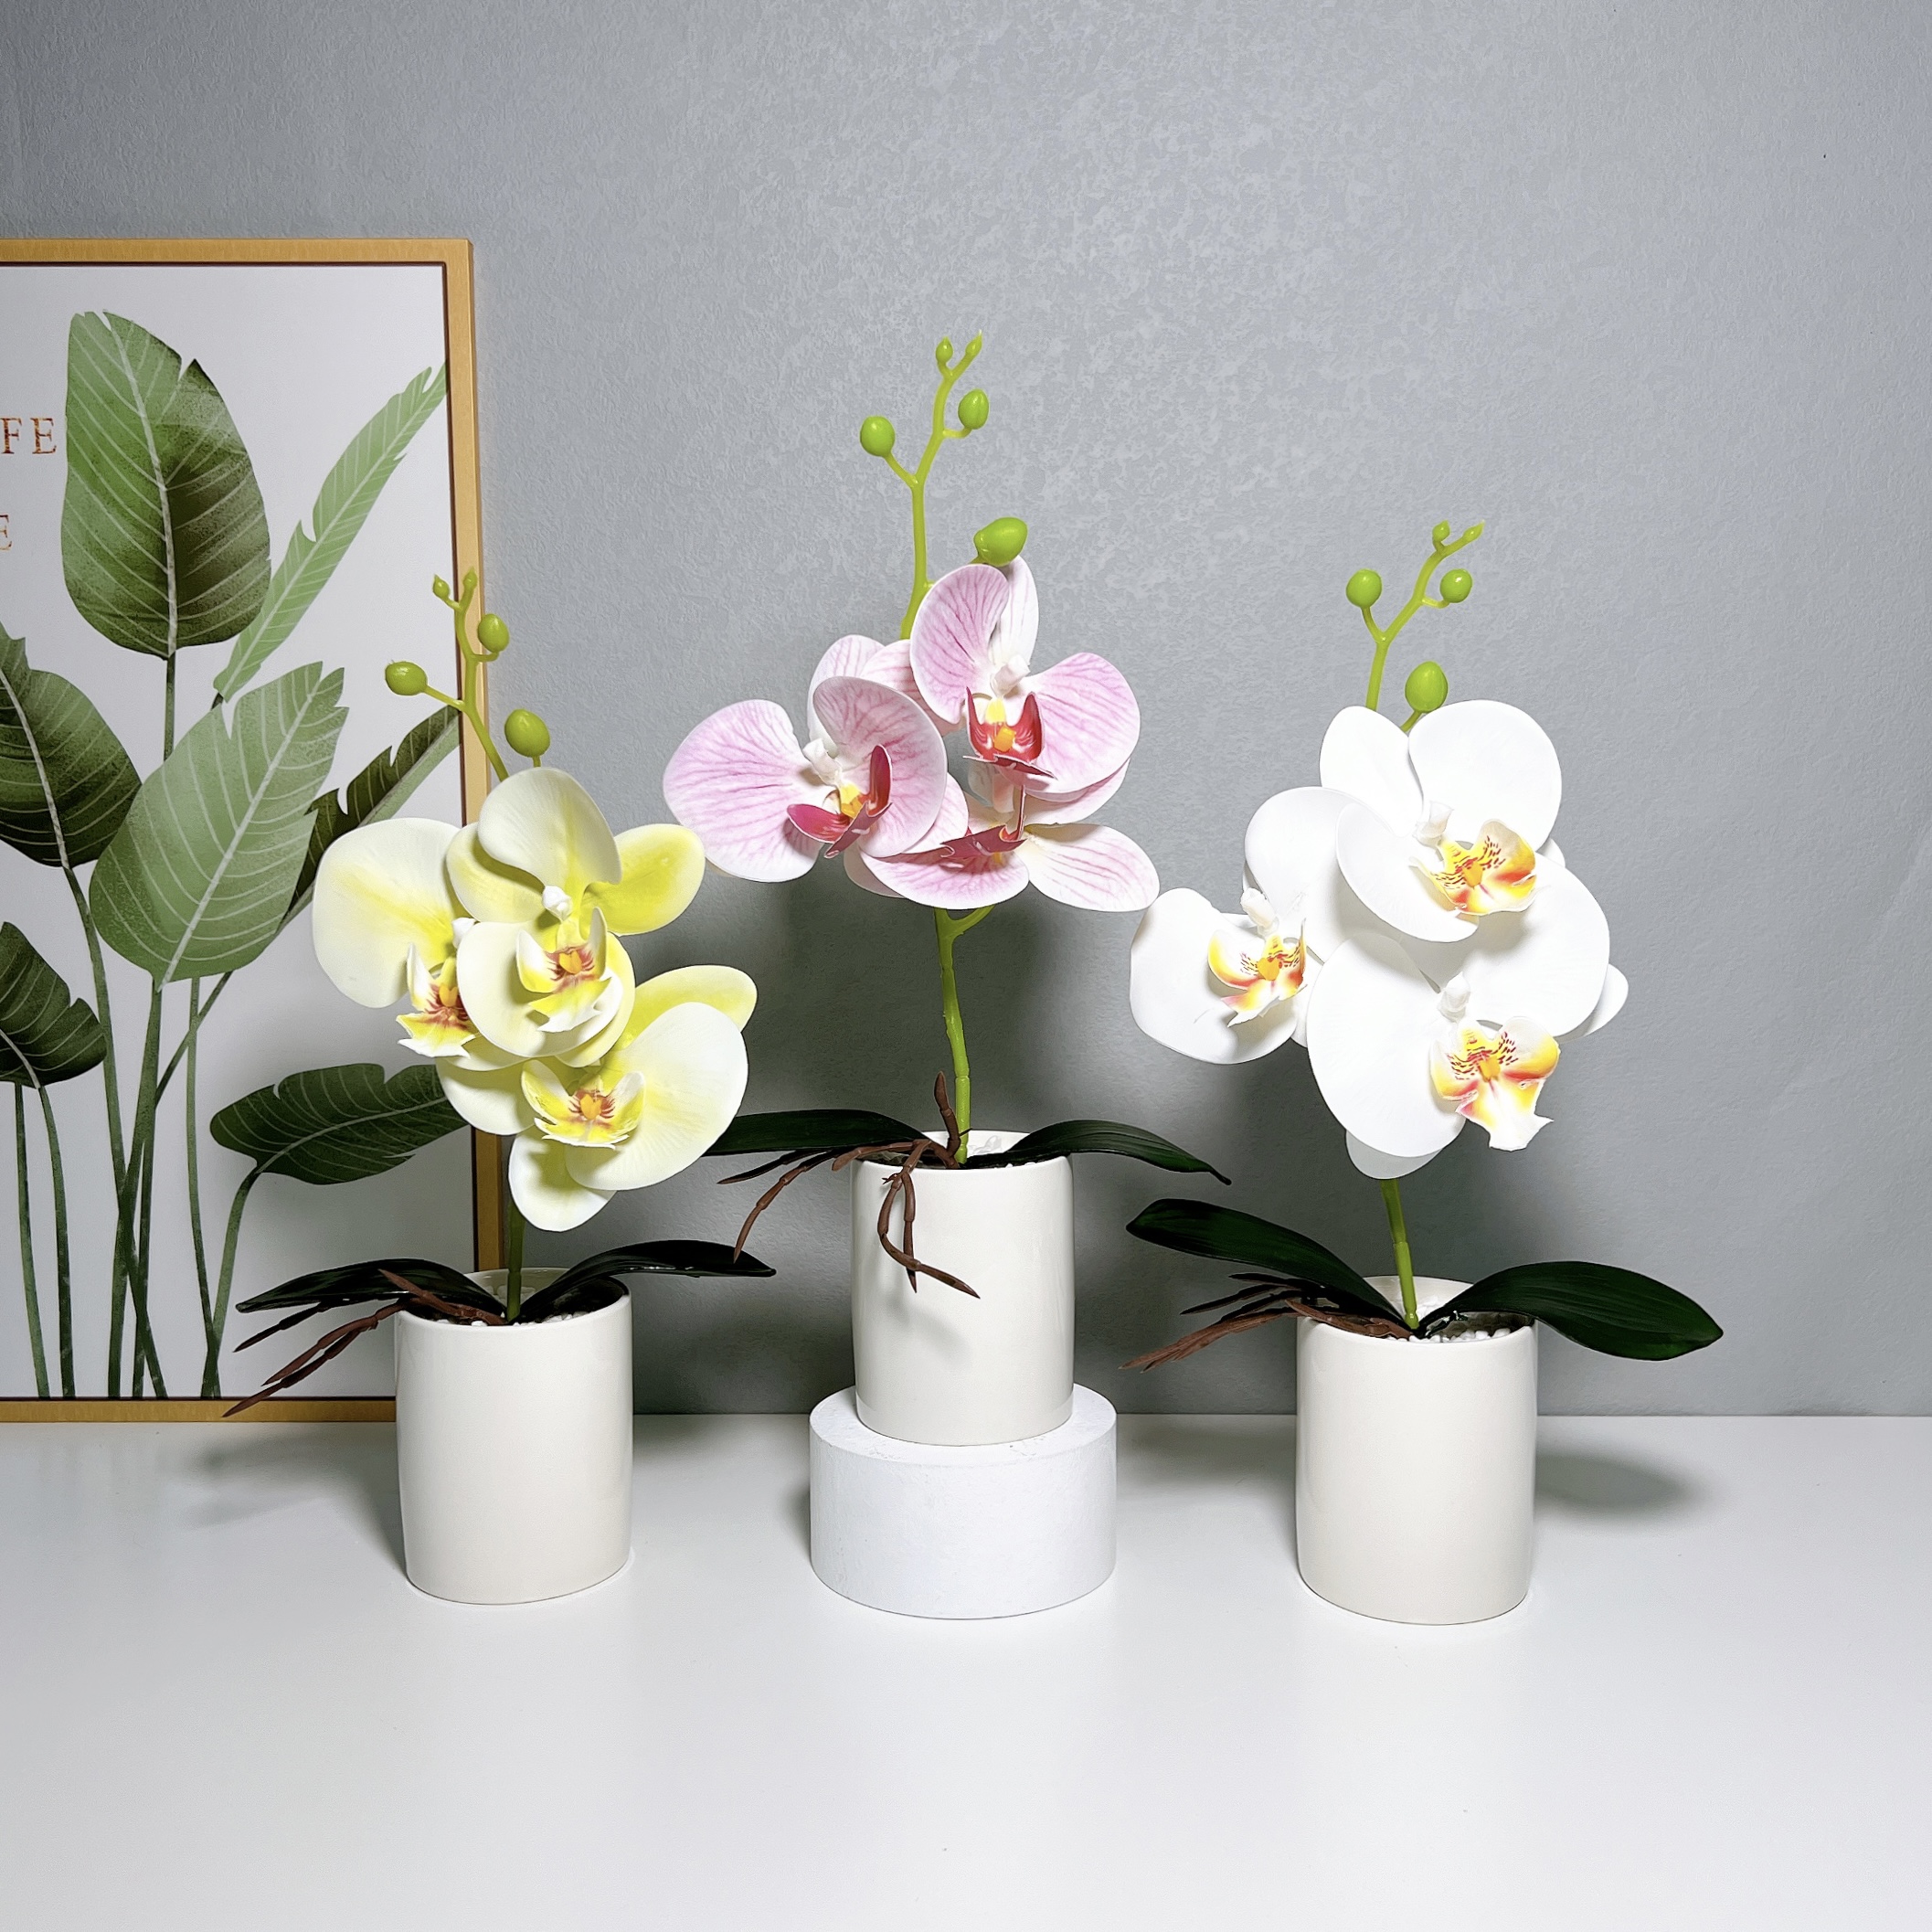 新款陶瓷三花蝴蝶兰花盆盆景创意室内摆件仿真花厂家直供人造植物